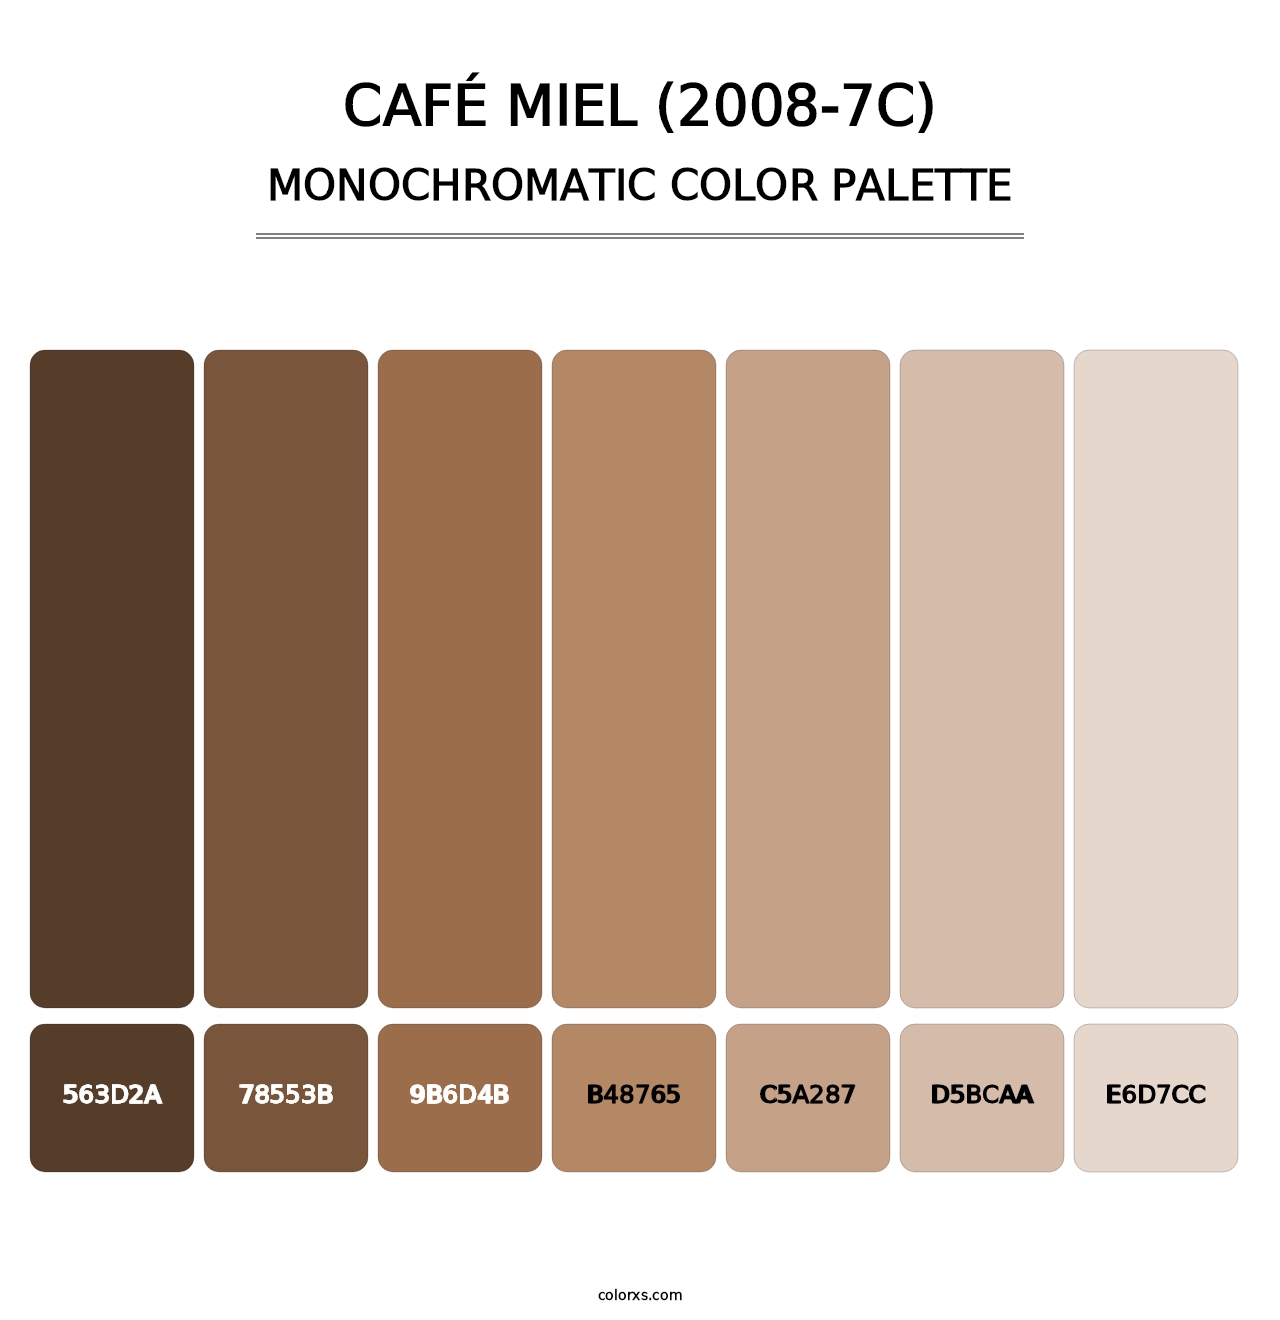 Café Miel (2008-7C) - Monochromatic Color Palette